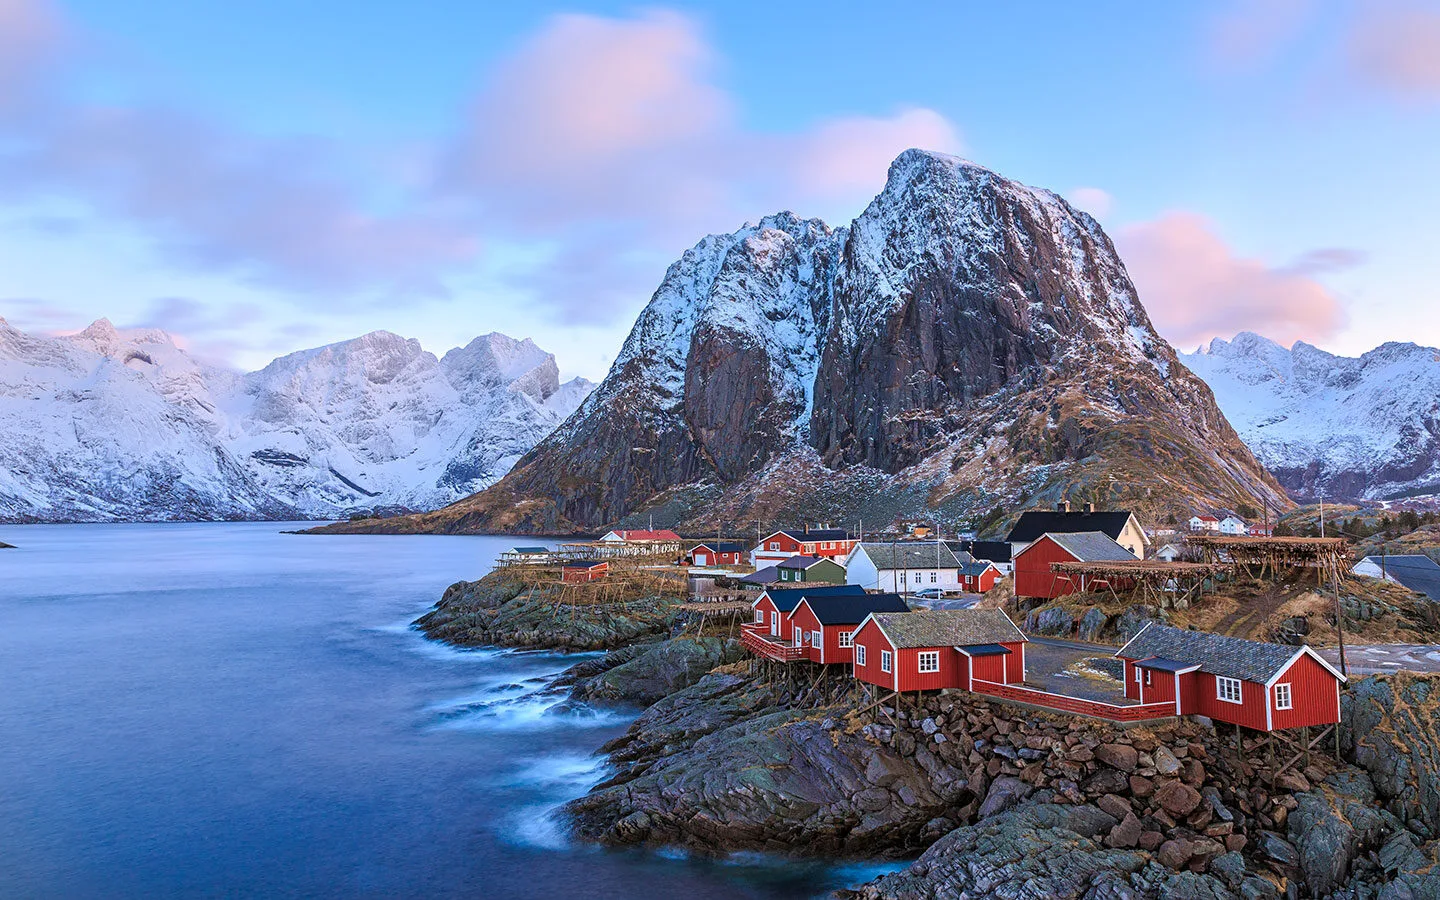 The Lofoten Islands in Norway